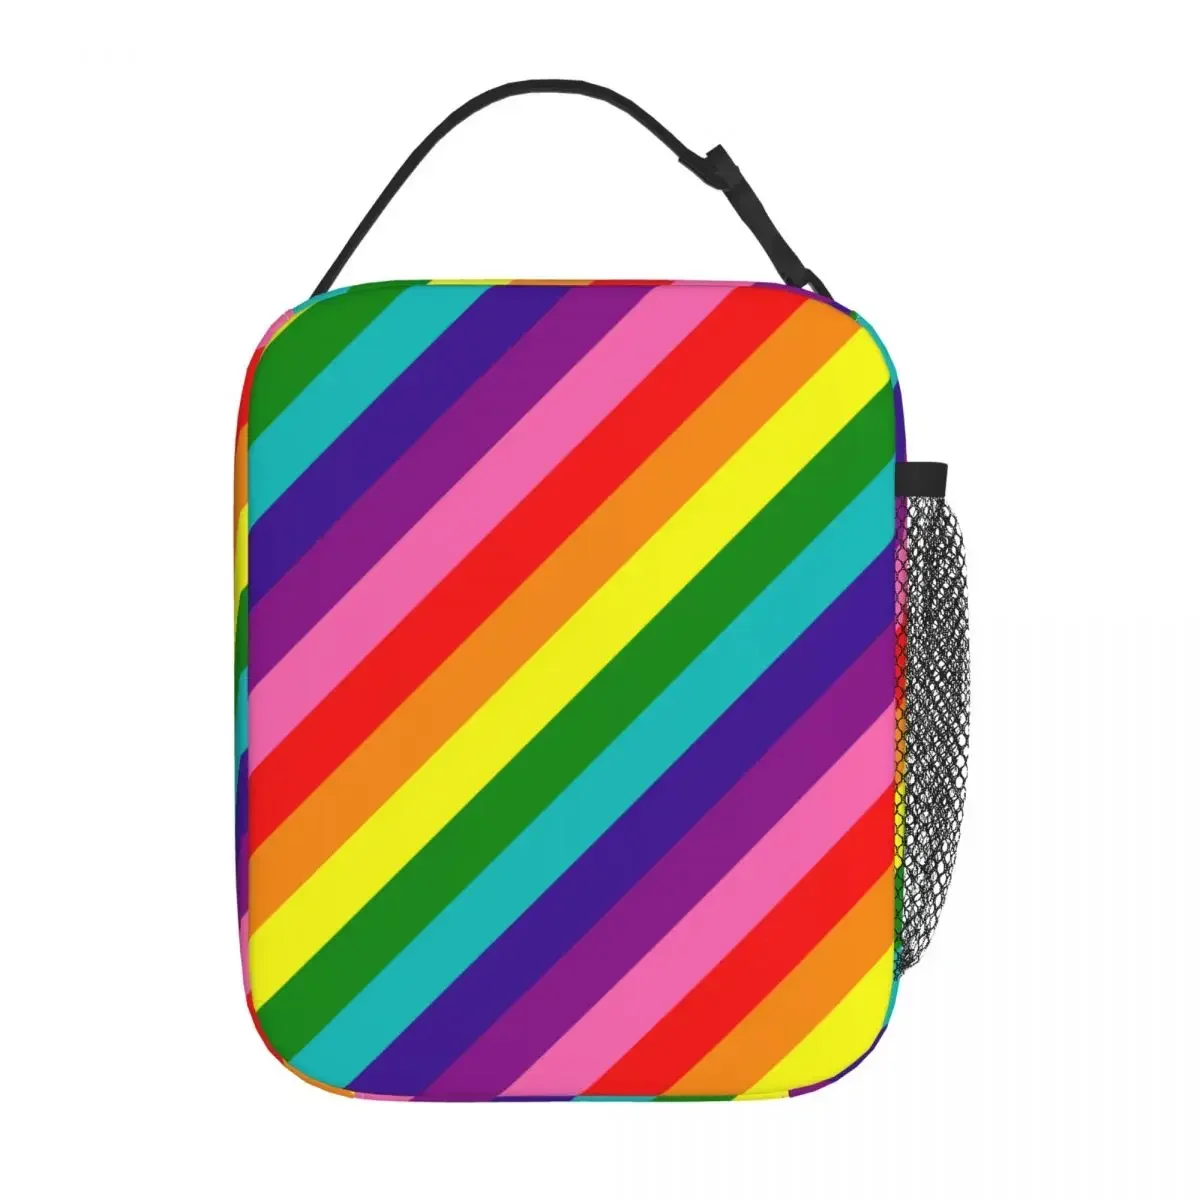 

Оригинальная изолированная сумка для ланча с 8 полосками Радуга, гей Pride ЛГБТ, Термосумка, многоразовая большая сумка-тоут для ланча, школьные сумки для хранения еды